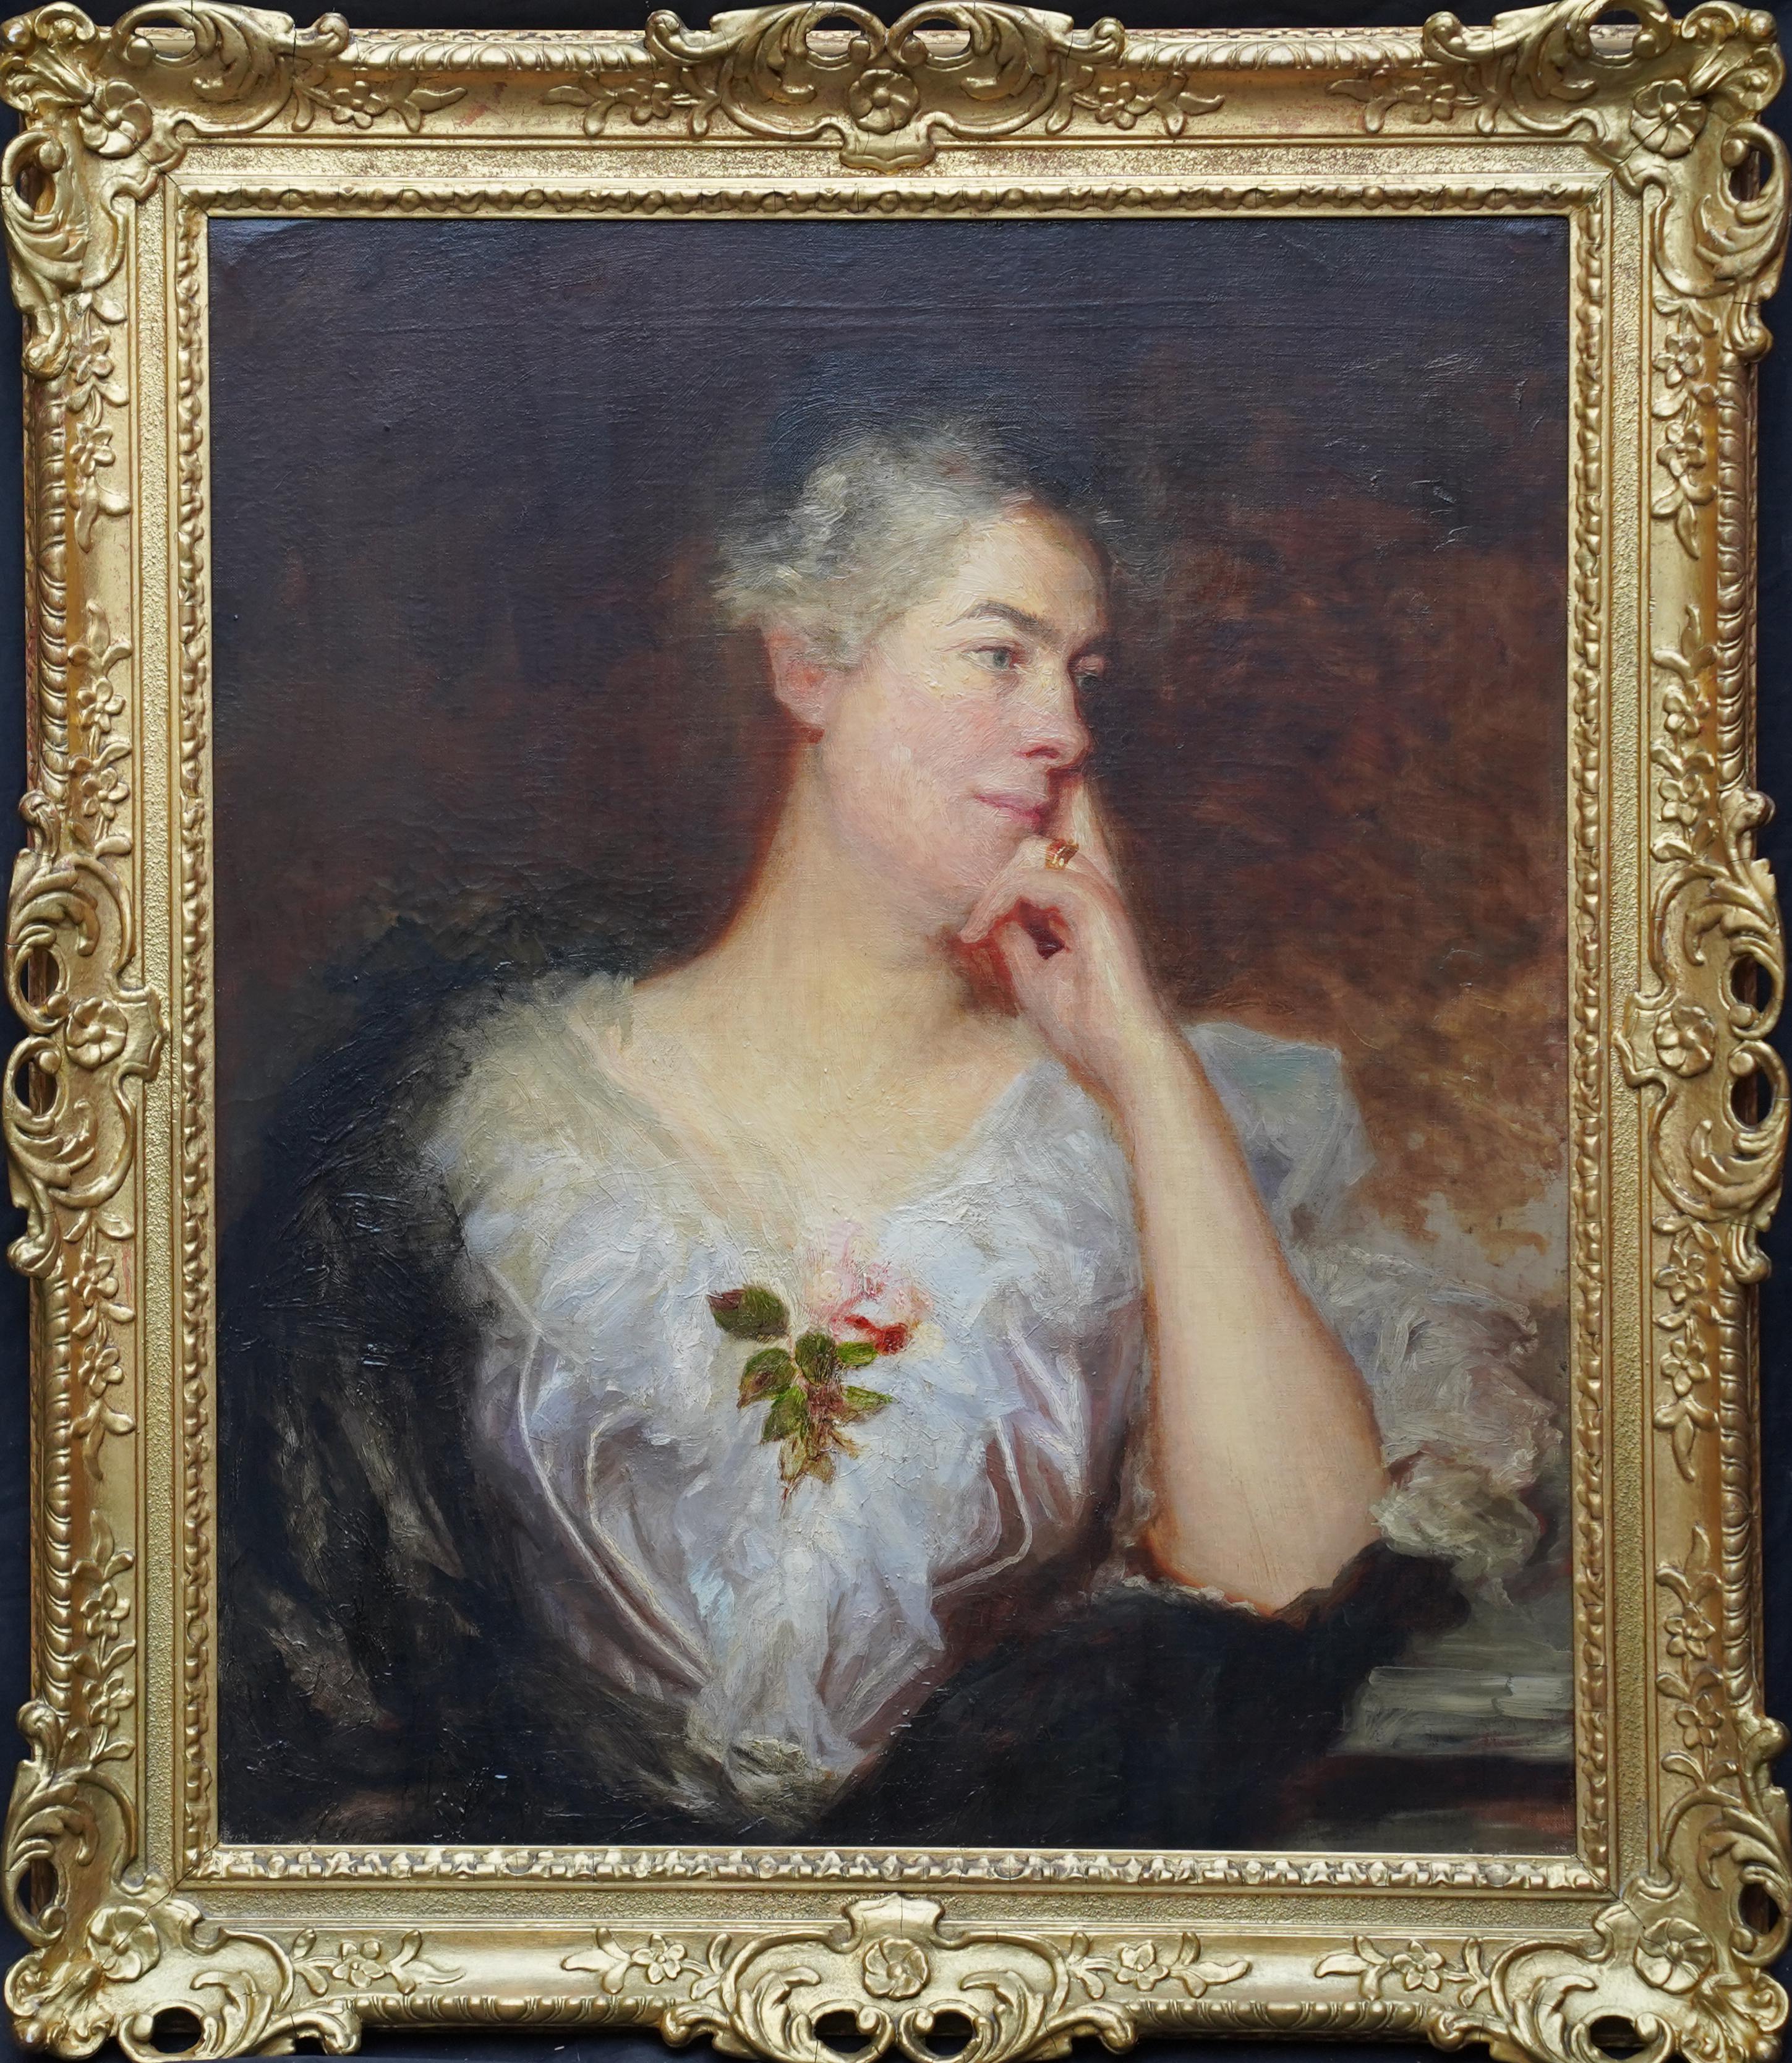 Portrait Painting William Etty (circle) - Portrait d'une femme avec une rose - Art britannique - Peinture à l'huile d'un portrait de maître ancien